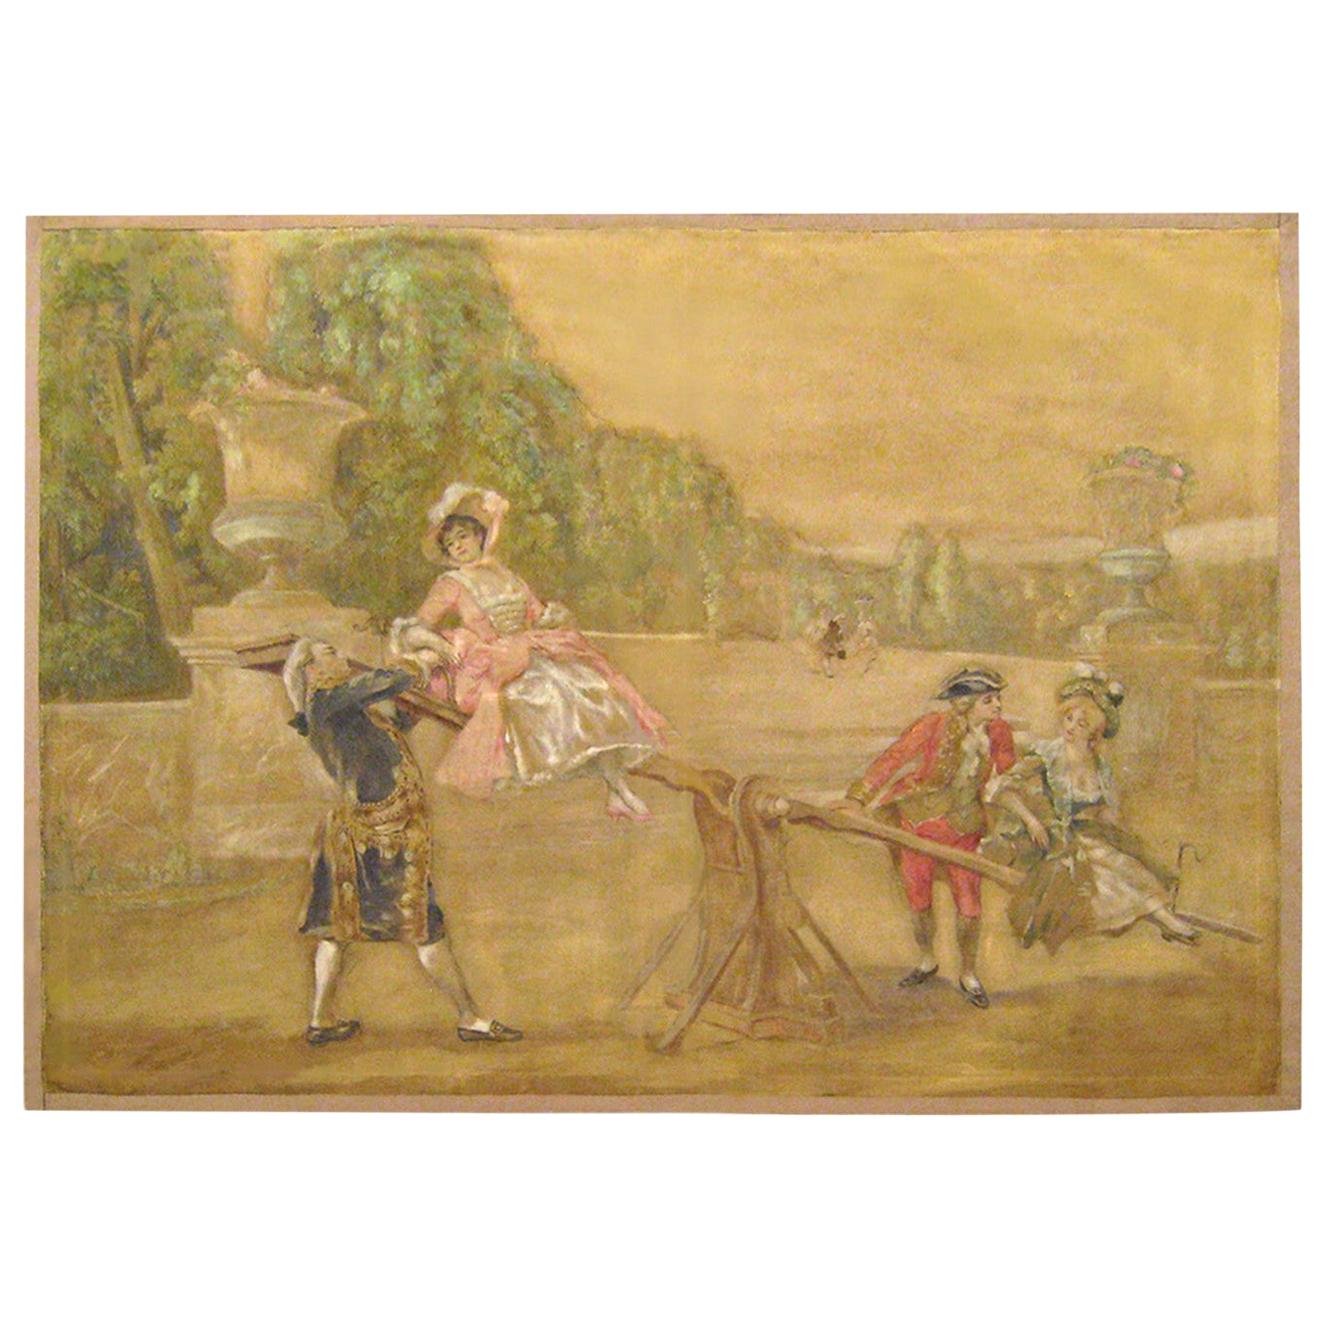 Französische rustikale Wandteppich- Cartoon des 19. Jahrhunderts, die Jugendliche beim Spiel darstellt